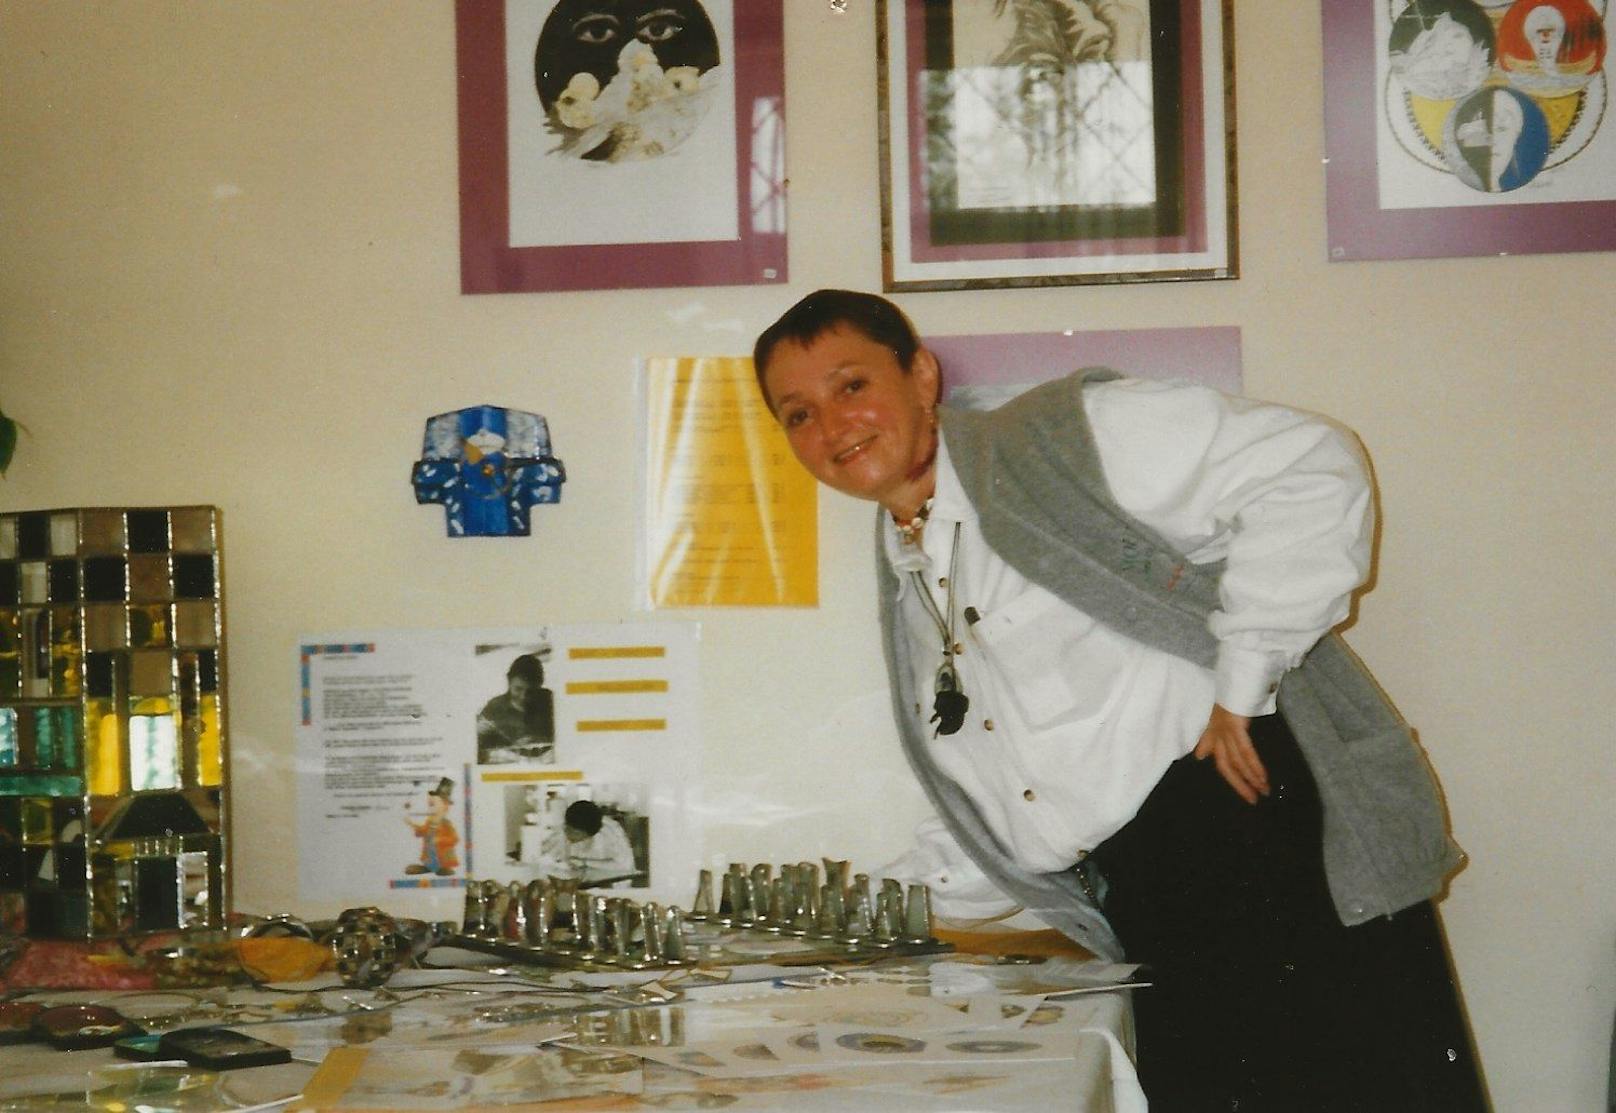 1998 nach einer Ausbildung zur Glaskünstlerin im Verein "Arge Sozial"